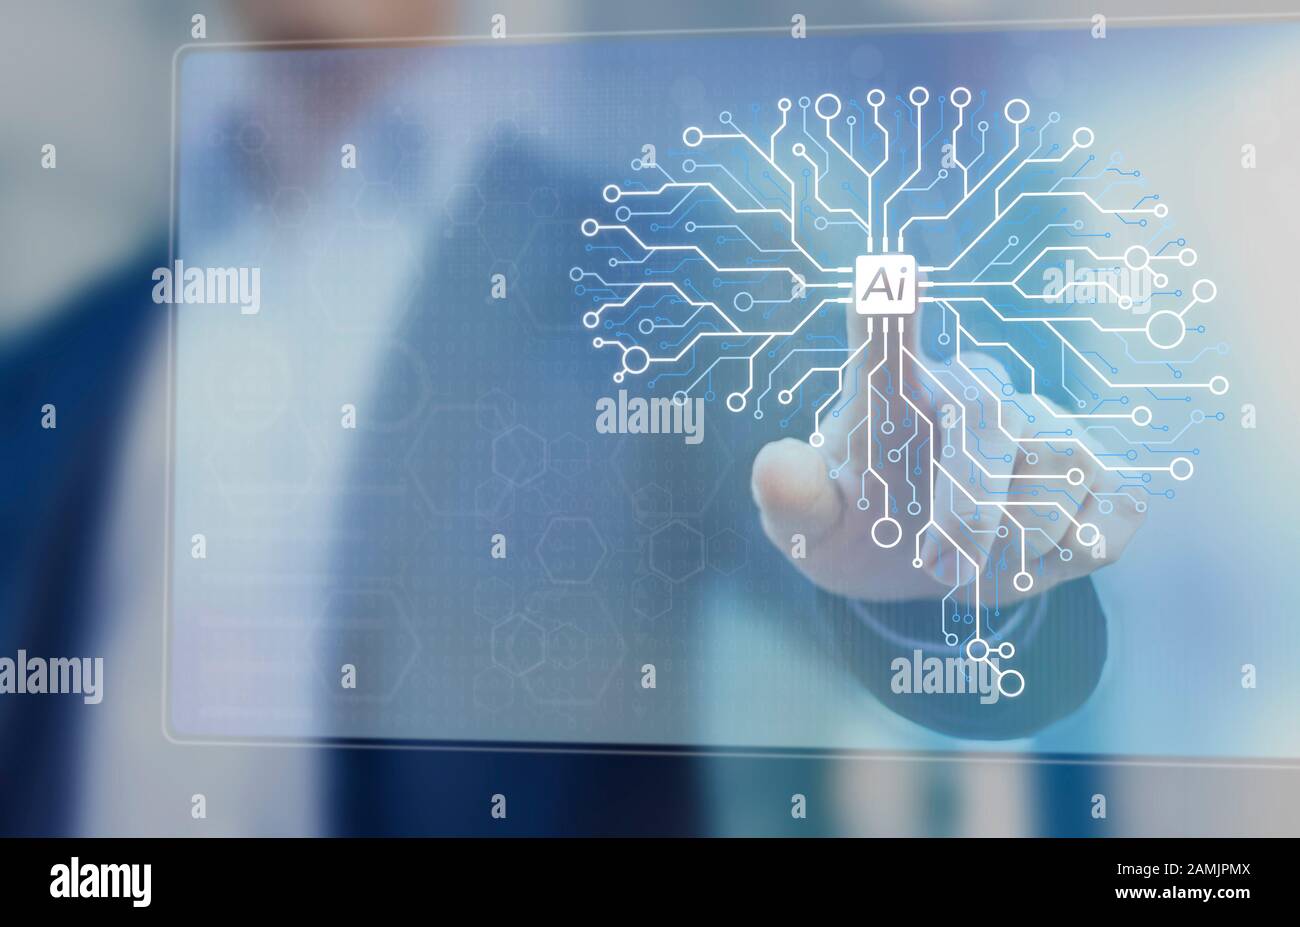 Künstliche Intelligenz und maschinelle Lerntechnologie zur Automatisierung von Prozessen, Konzept mit KI-Ingenieur, der an elektronischen Schaltkreisen arbeitet, neuronales Netz des Gehirns Stockfoto